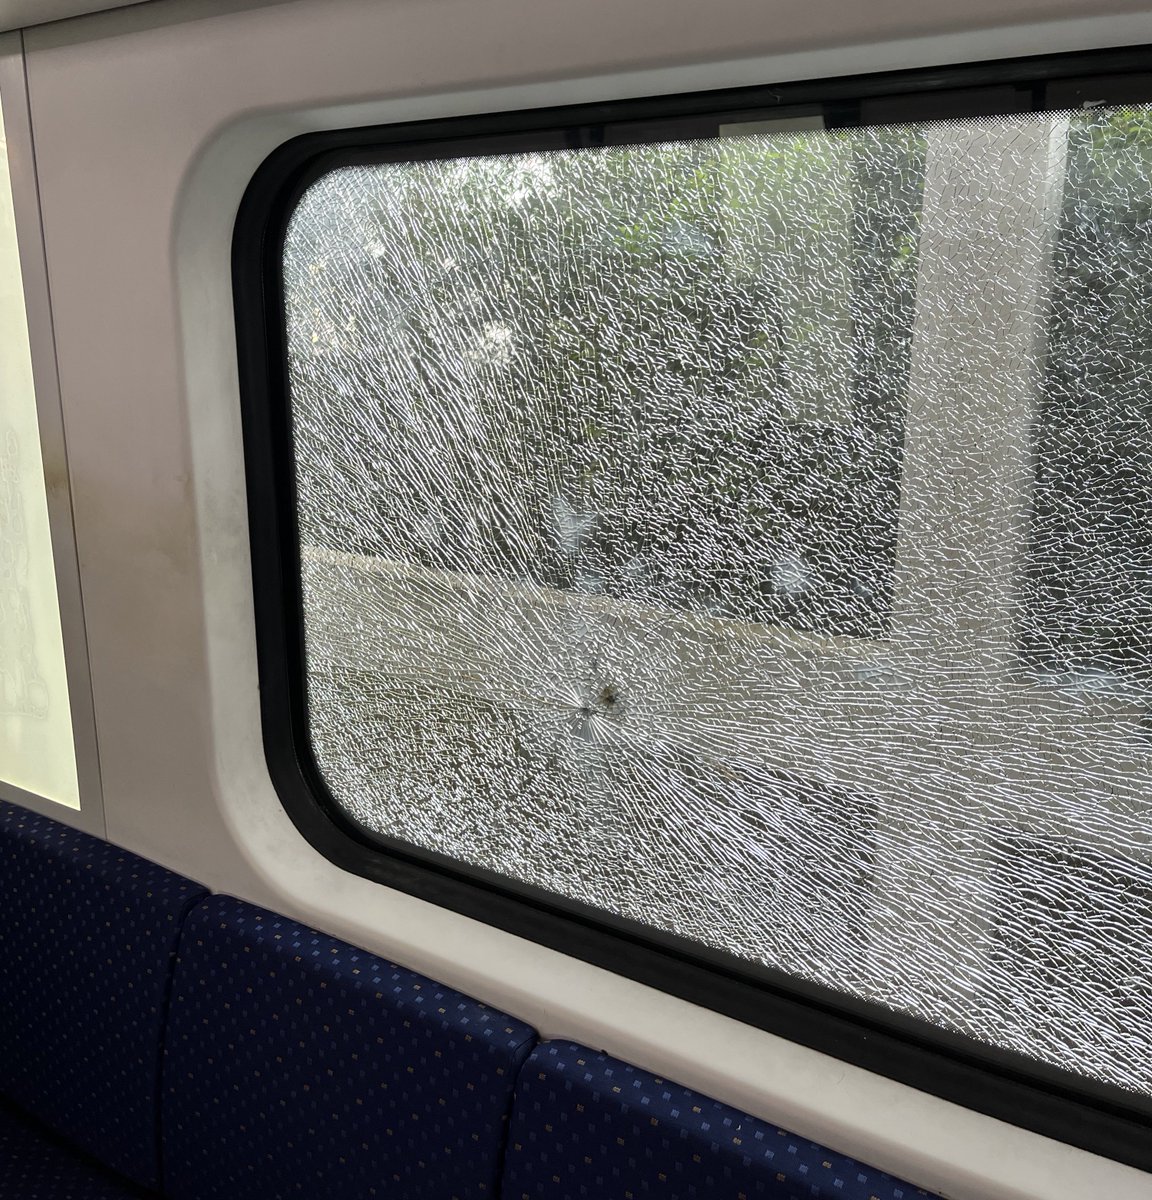 “tak sabarnya nak tengok view dari dalam train nanti 😍” the tingkap: